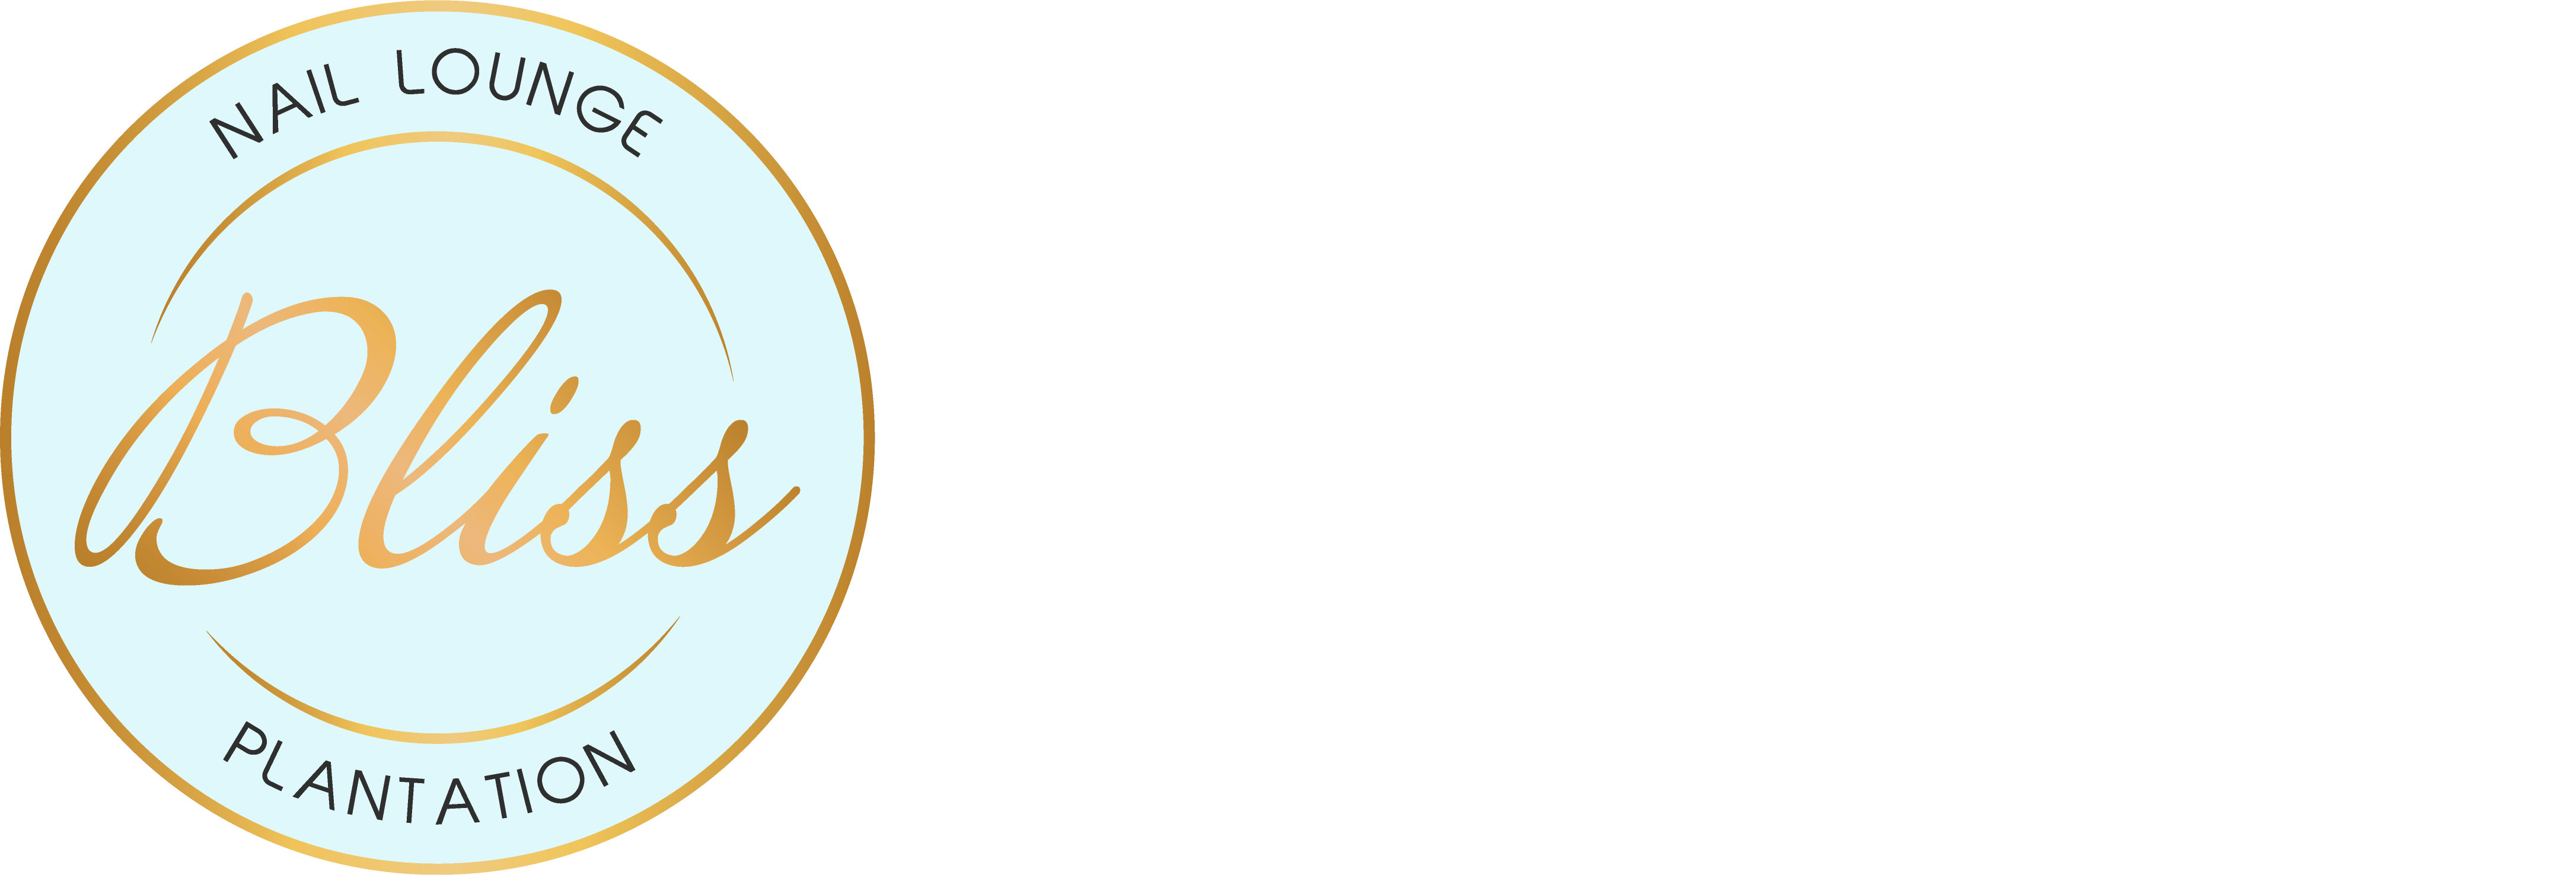 Bliss Nail Lounge Plantation